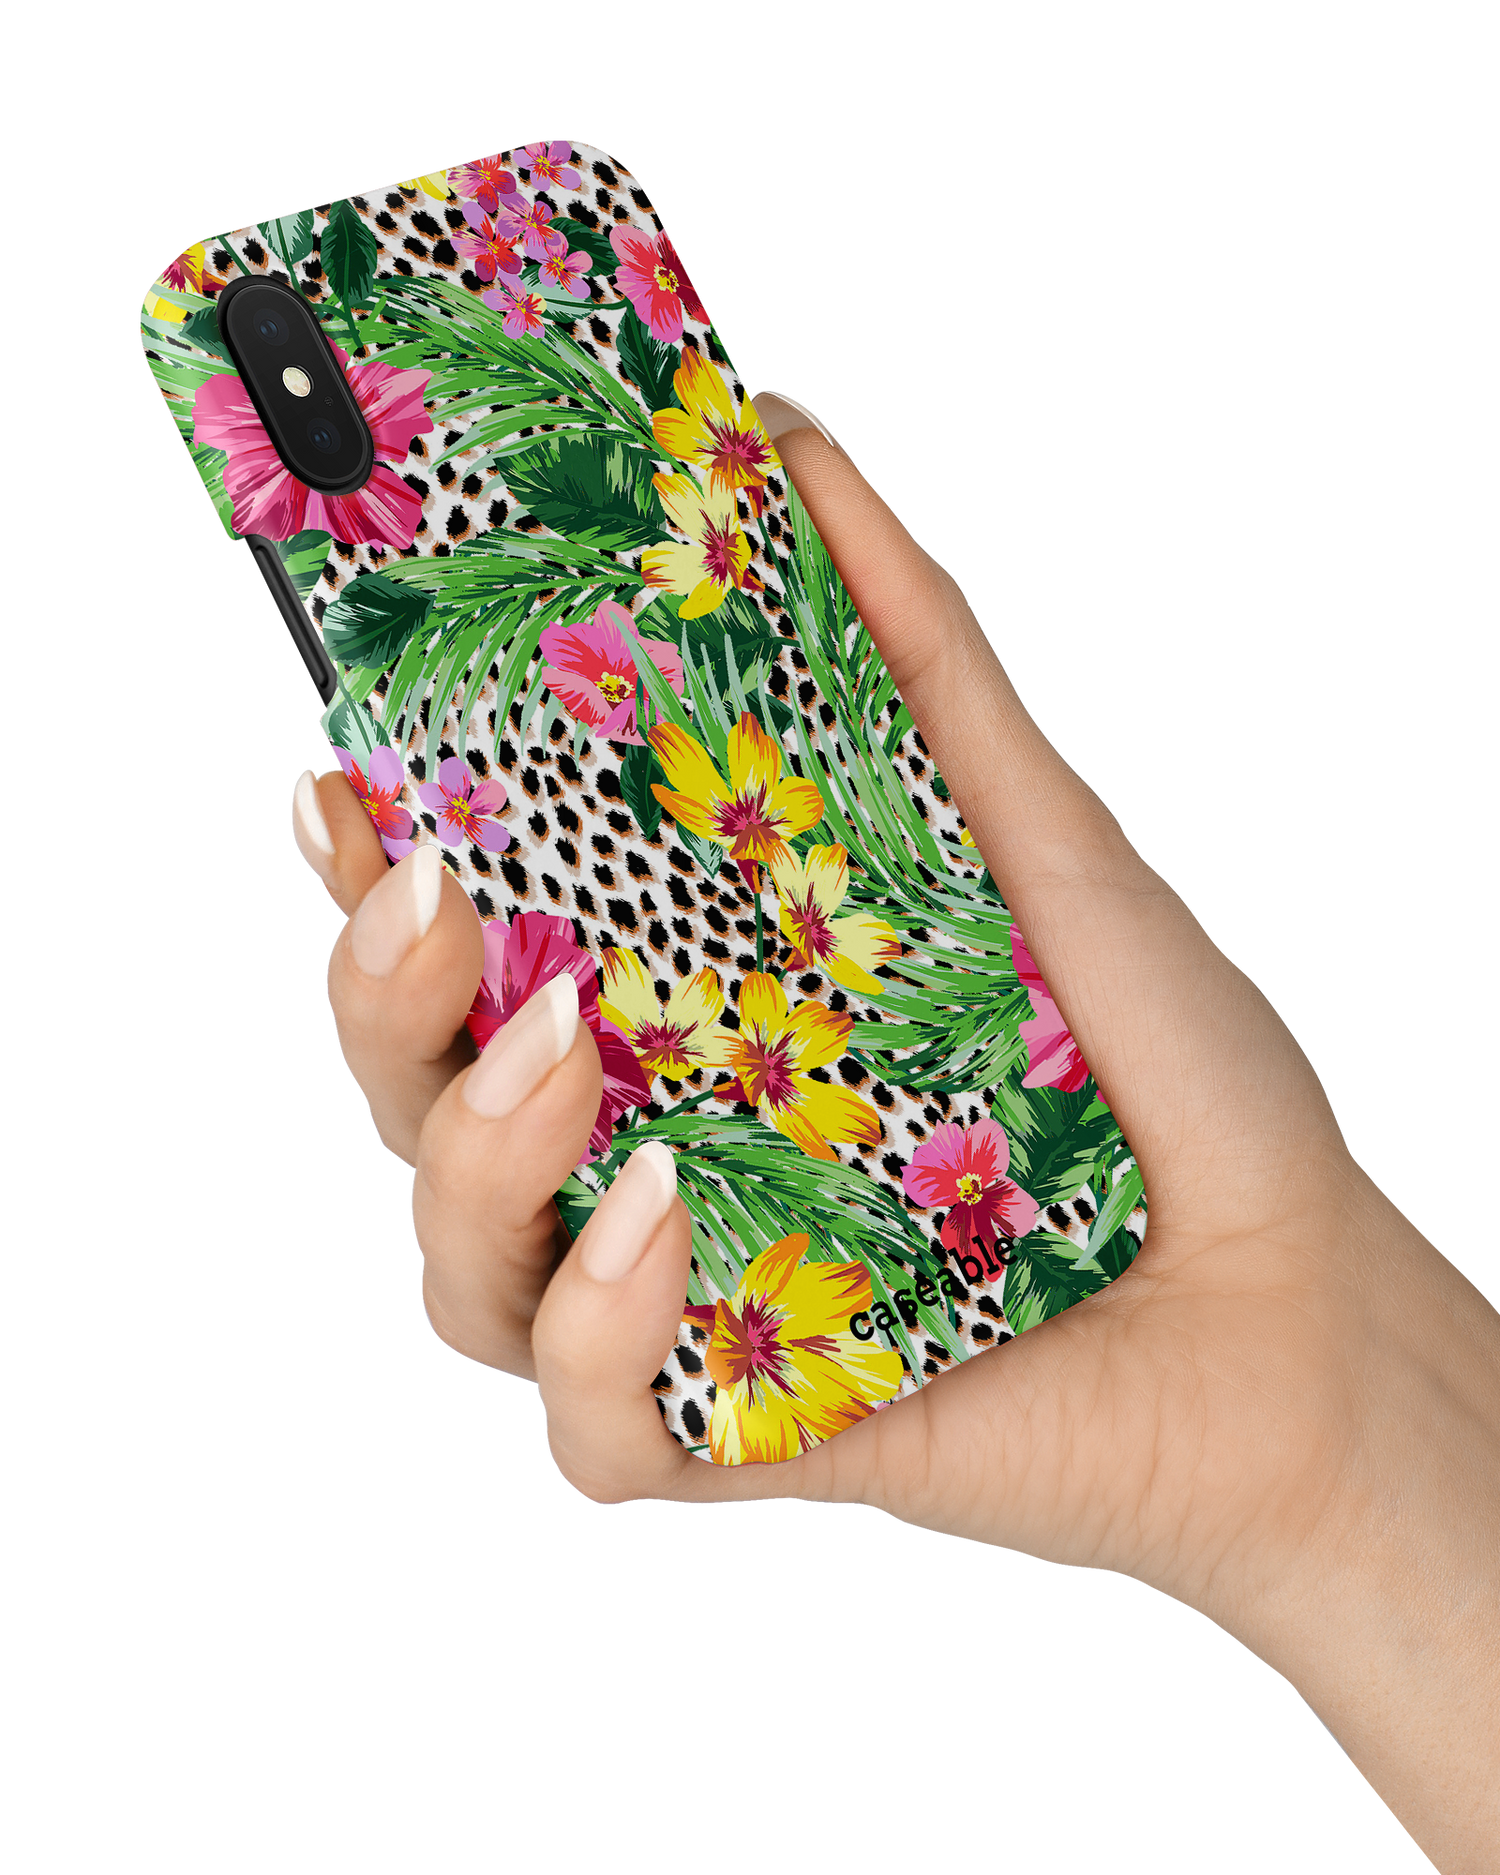 Tropical Cheetah Hardcase Handyhülle Apple iPhone X, Apple iPhone XS in der Hand gehalten